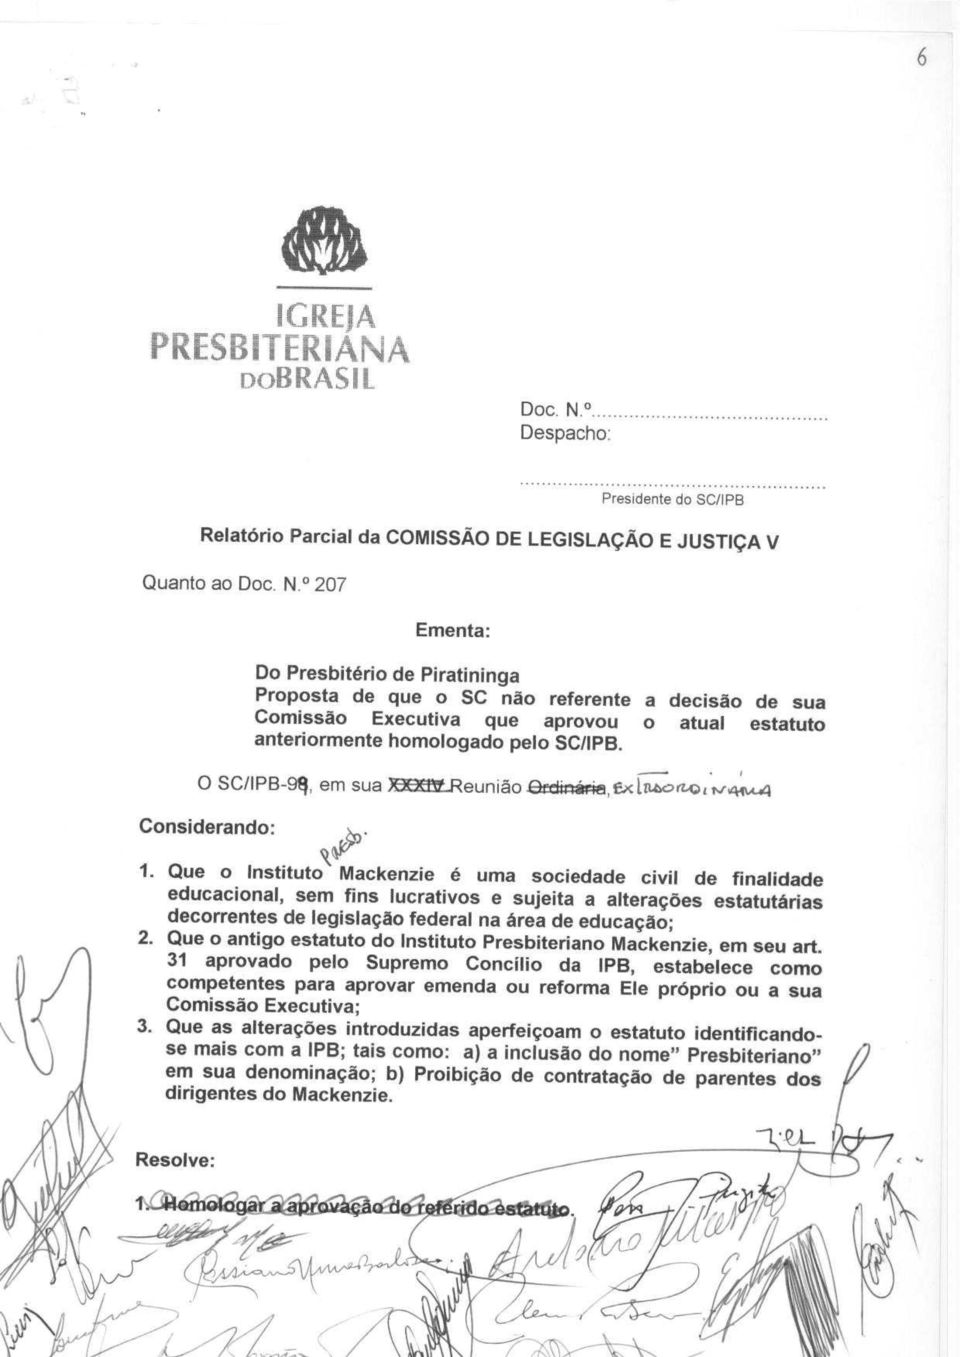 207 Ementa: Do Presbit6rio de Piratininga Proposta de que o SC nao referente a decisao de sua Comissao Executiva que aprovou o atual estatuto anteriormente homologado pelo SC/IPB.